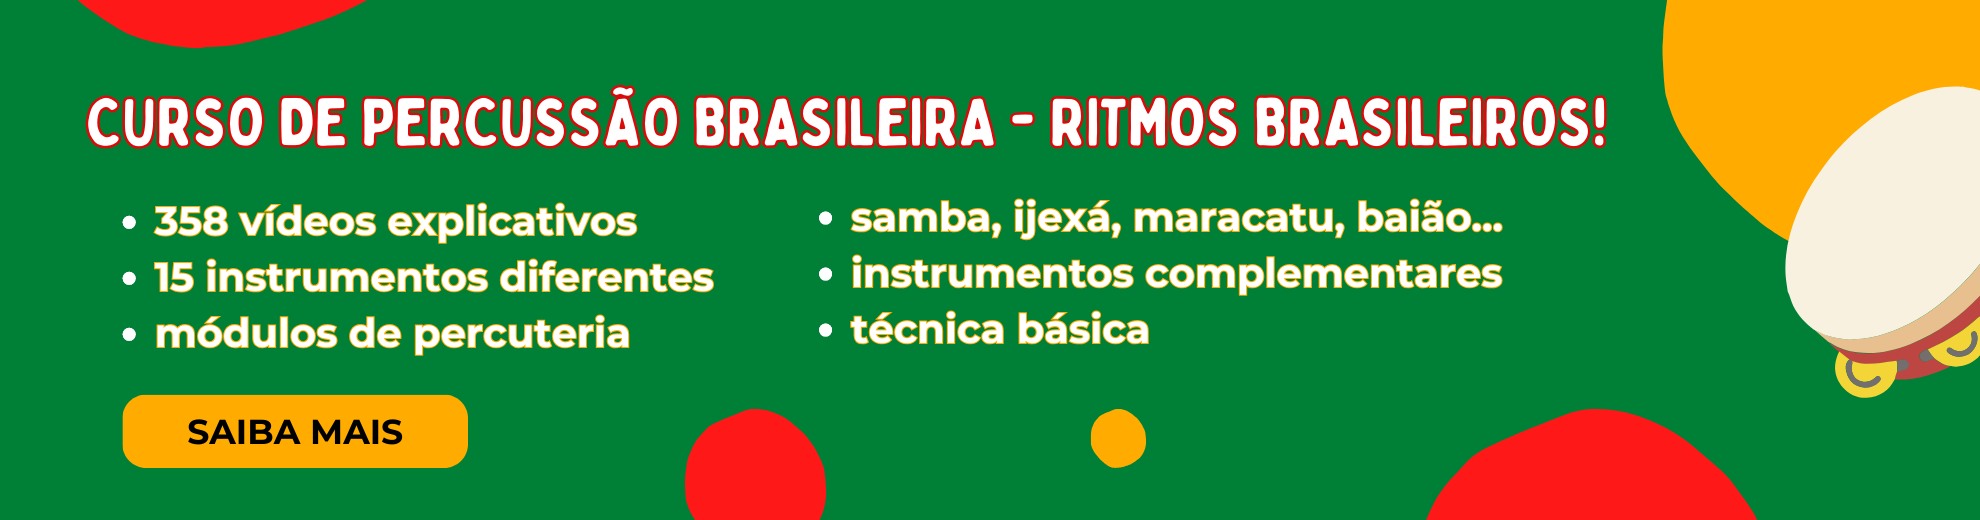 curso de percussão brasileira - ritmos brasileiros - instrumentos de percussão